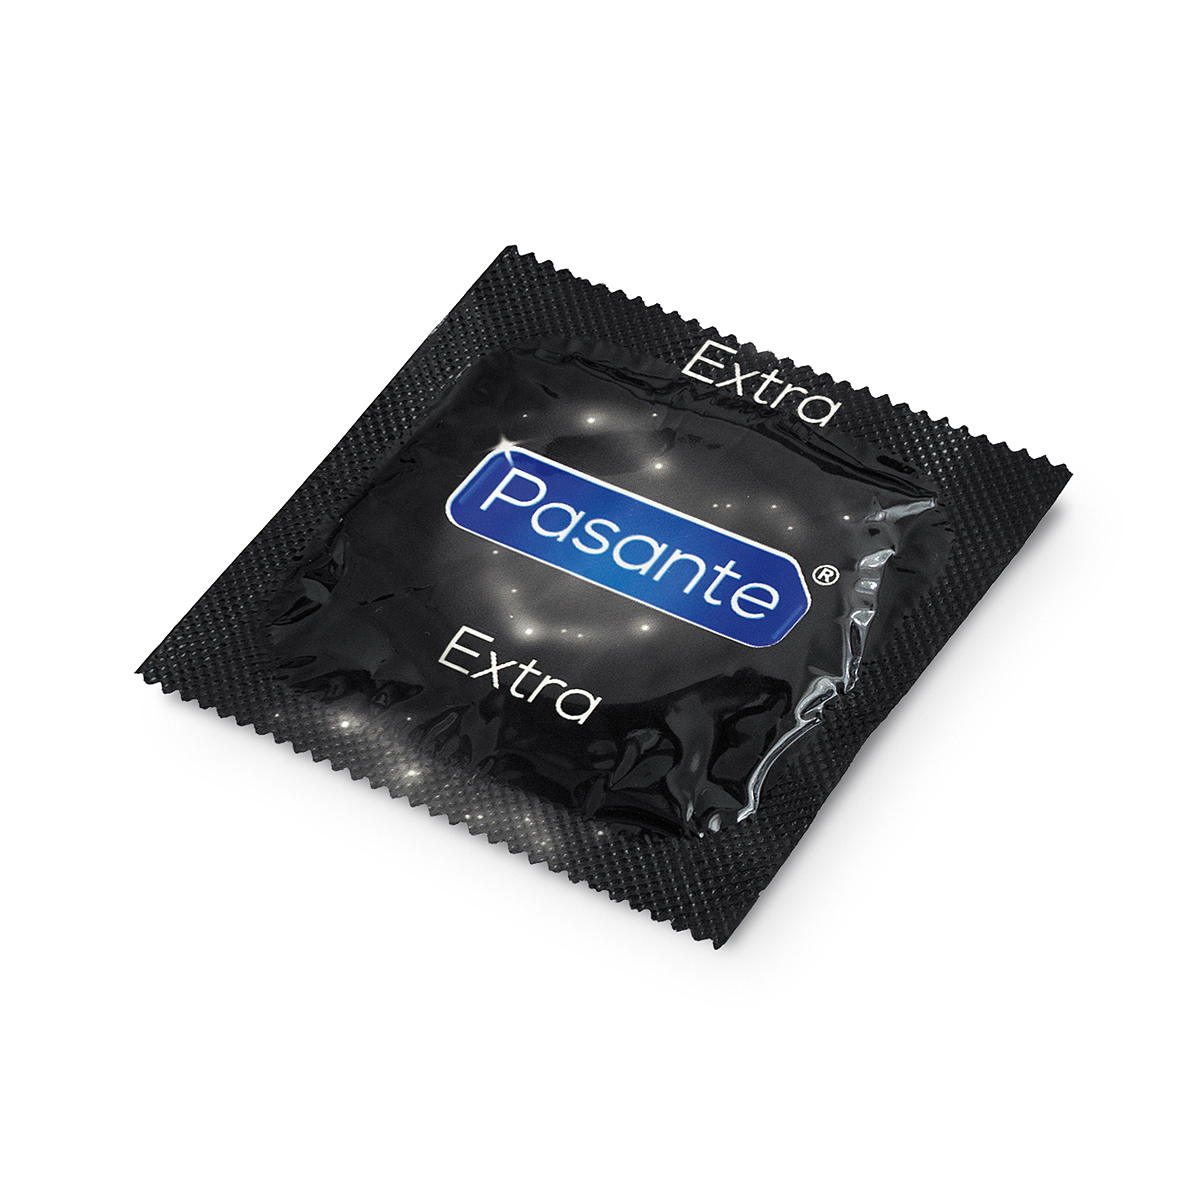 Pasante extra strong condoms